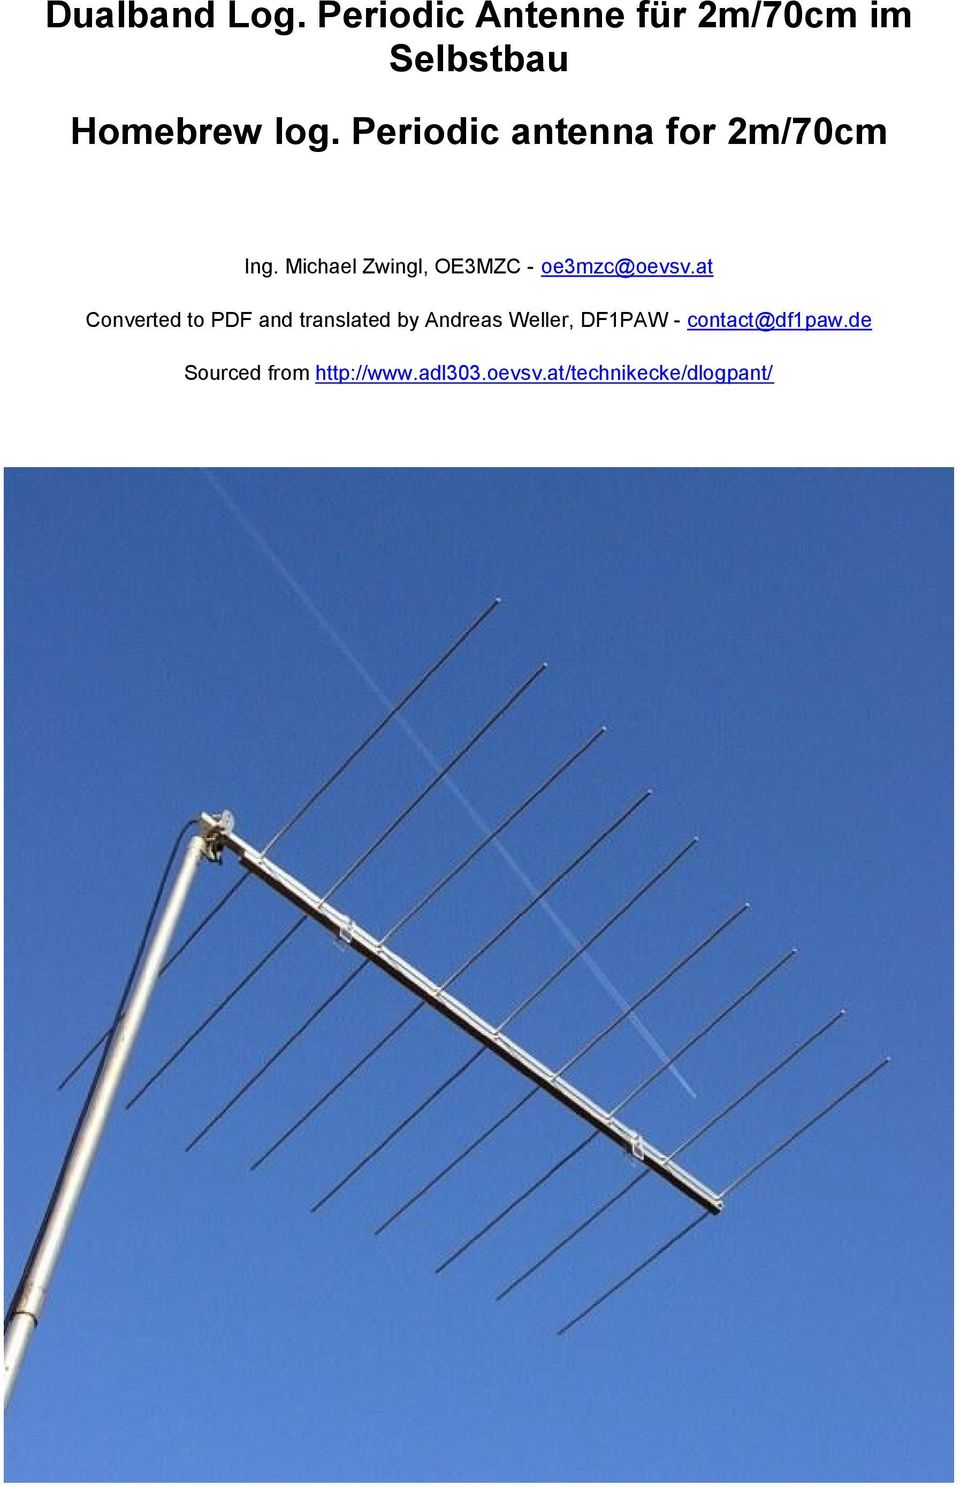 log periodischen amateur radio antenne